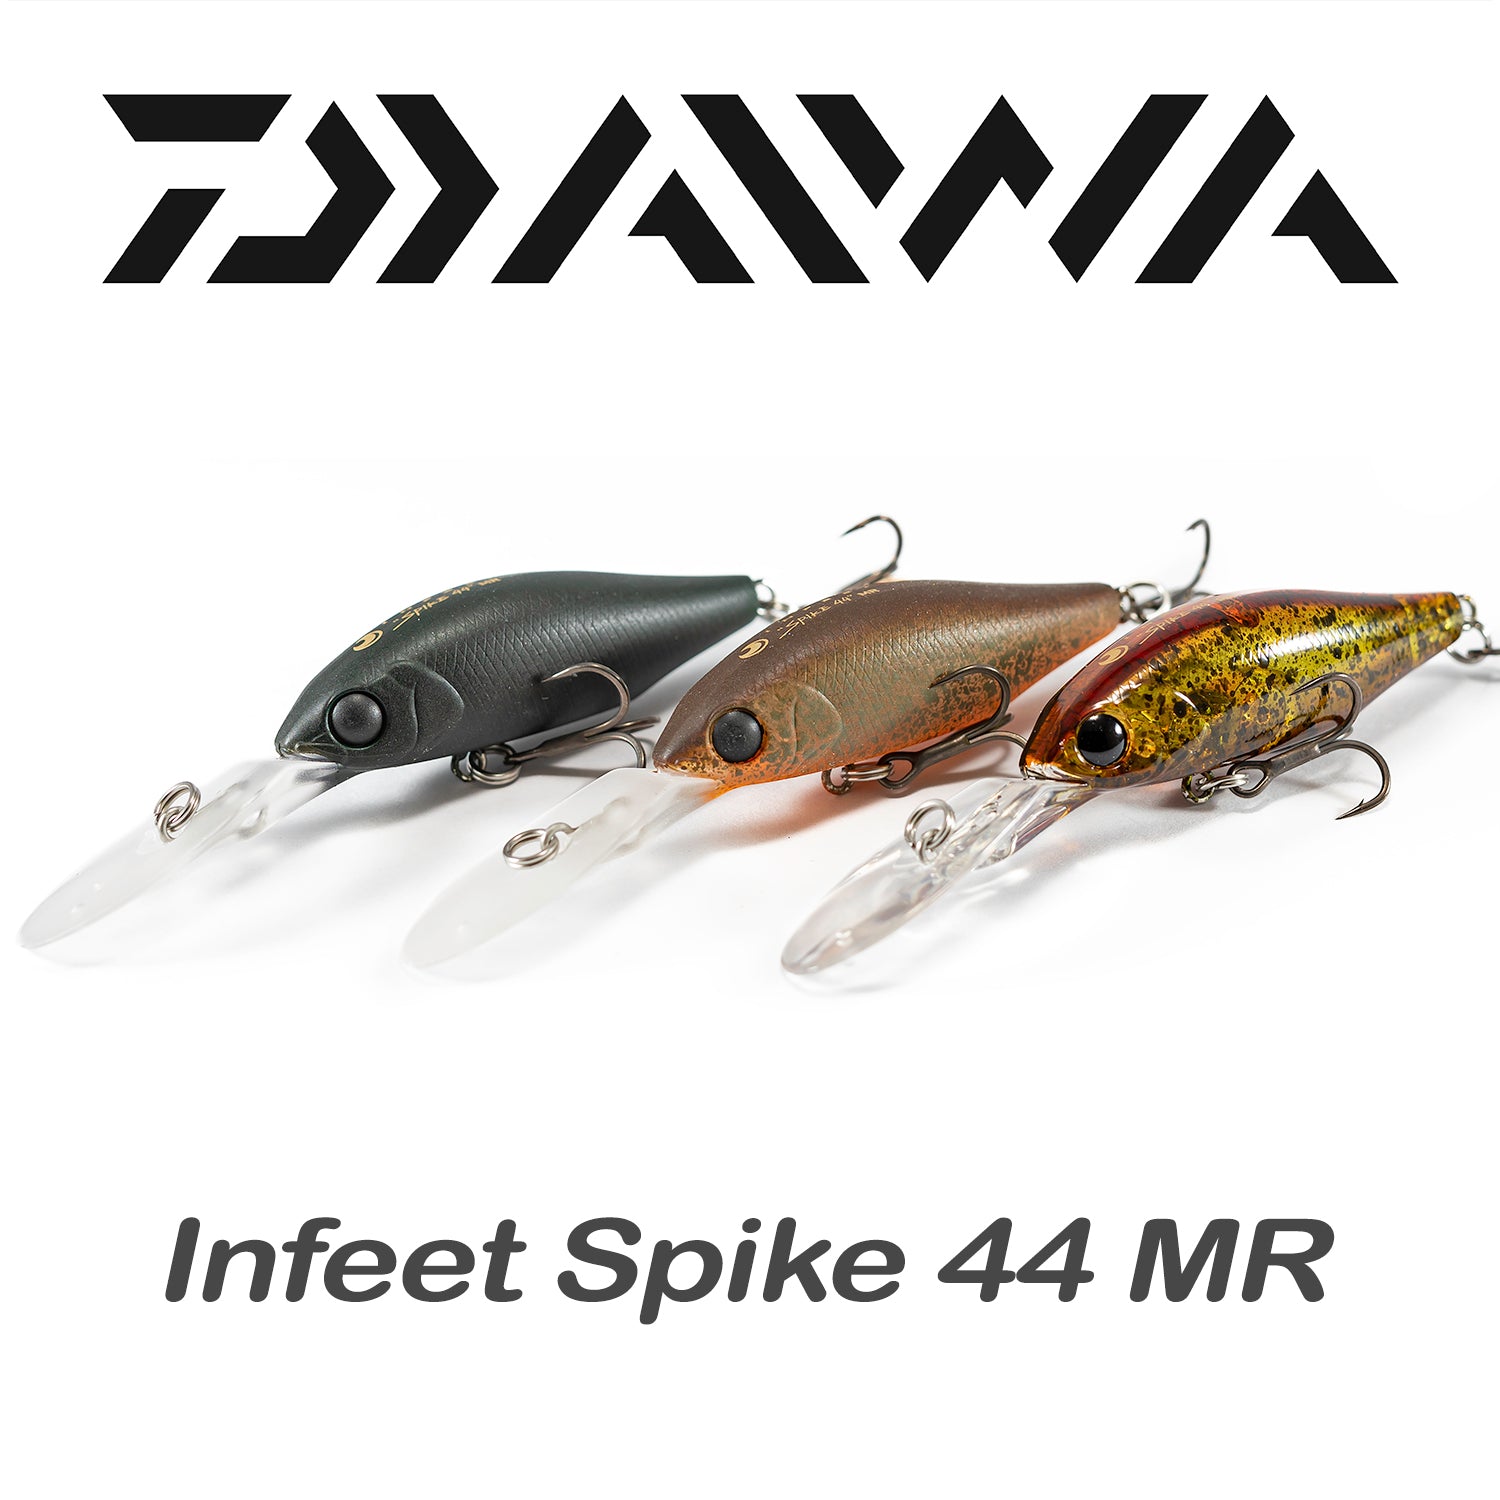 Daiwa Infeet Spike 44 MR Cover